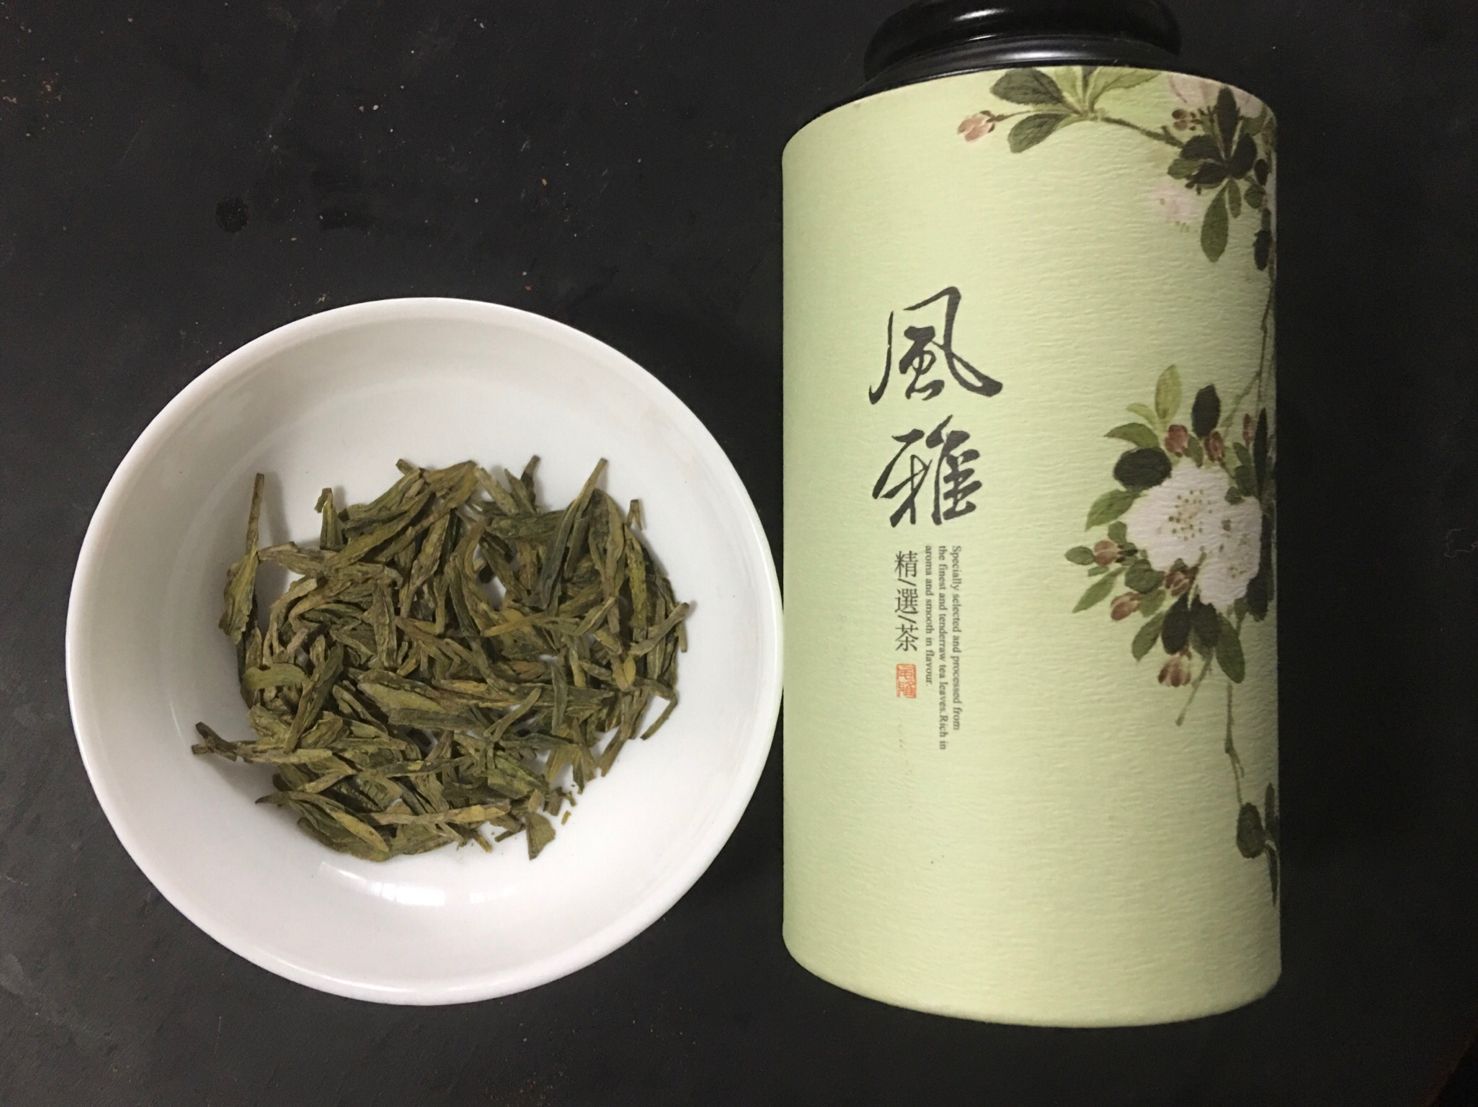 Lóng Jǐng Lǜ Chá, 龙井绿茶, Dragon Well Green Tea